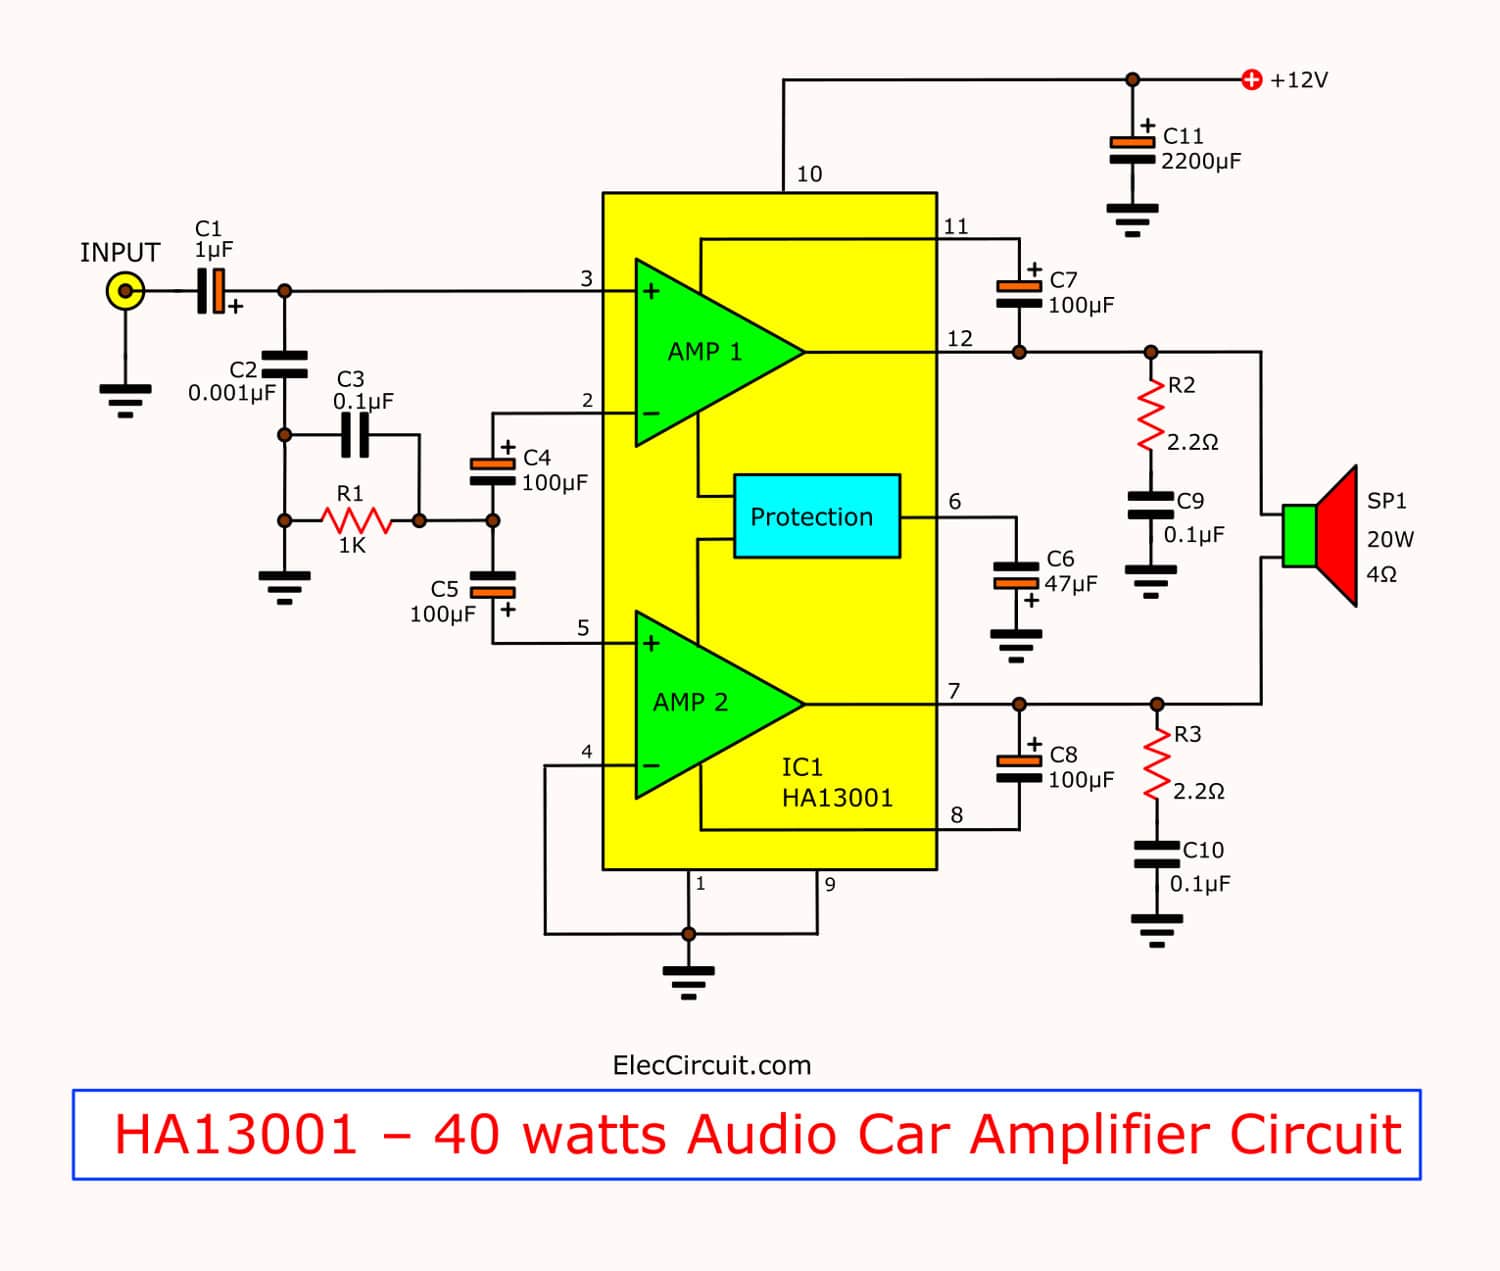 Mini 40 watt audio car amplifier circuit using HA13001